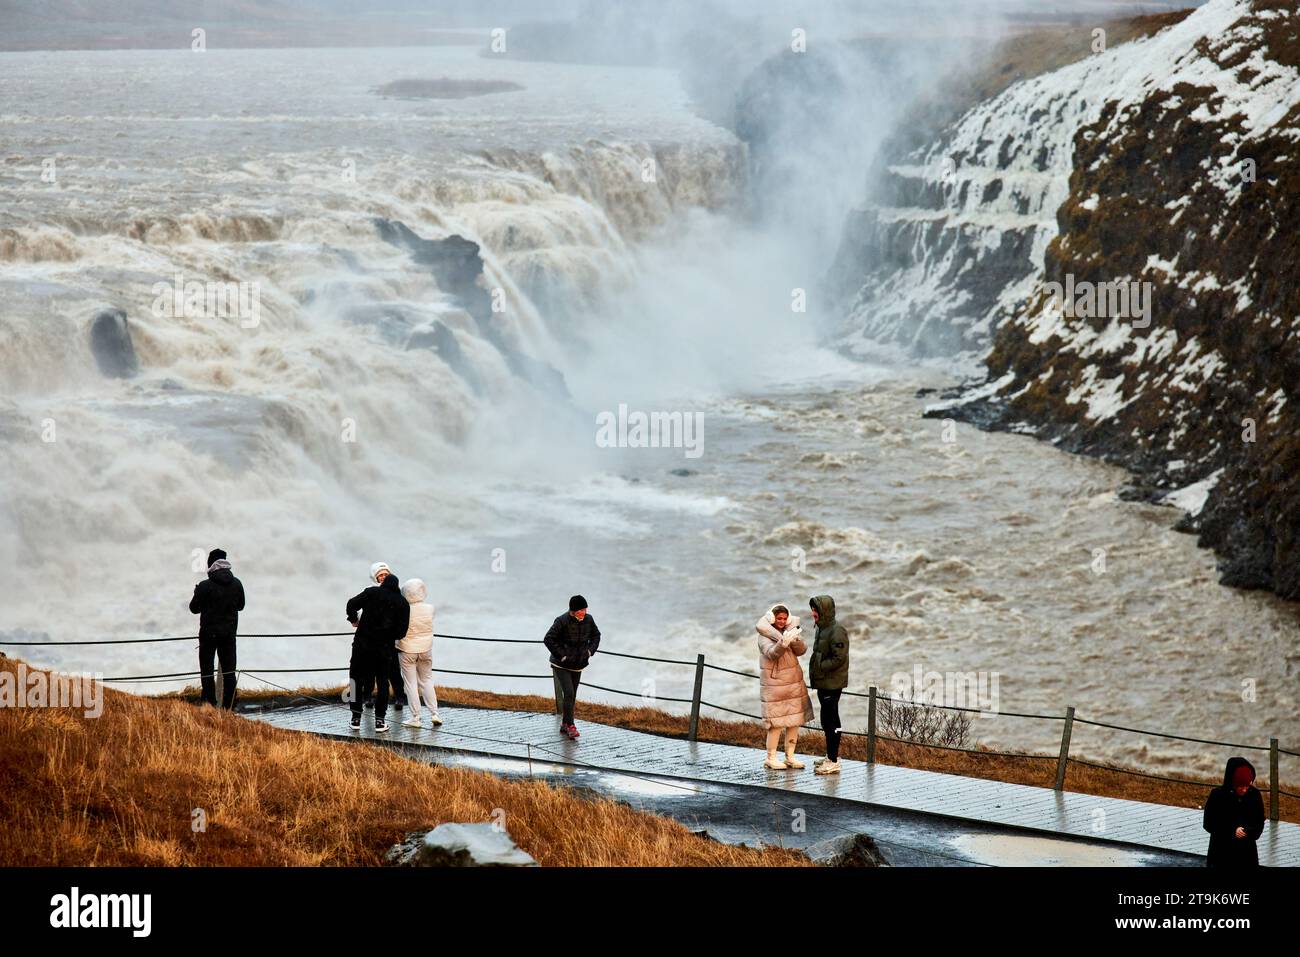 La cascade de Gullfoss est située dans le canyon de la rivière Hvítá, dans le sud-ouest de l'Islande Banque D'Images